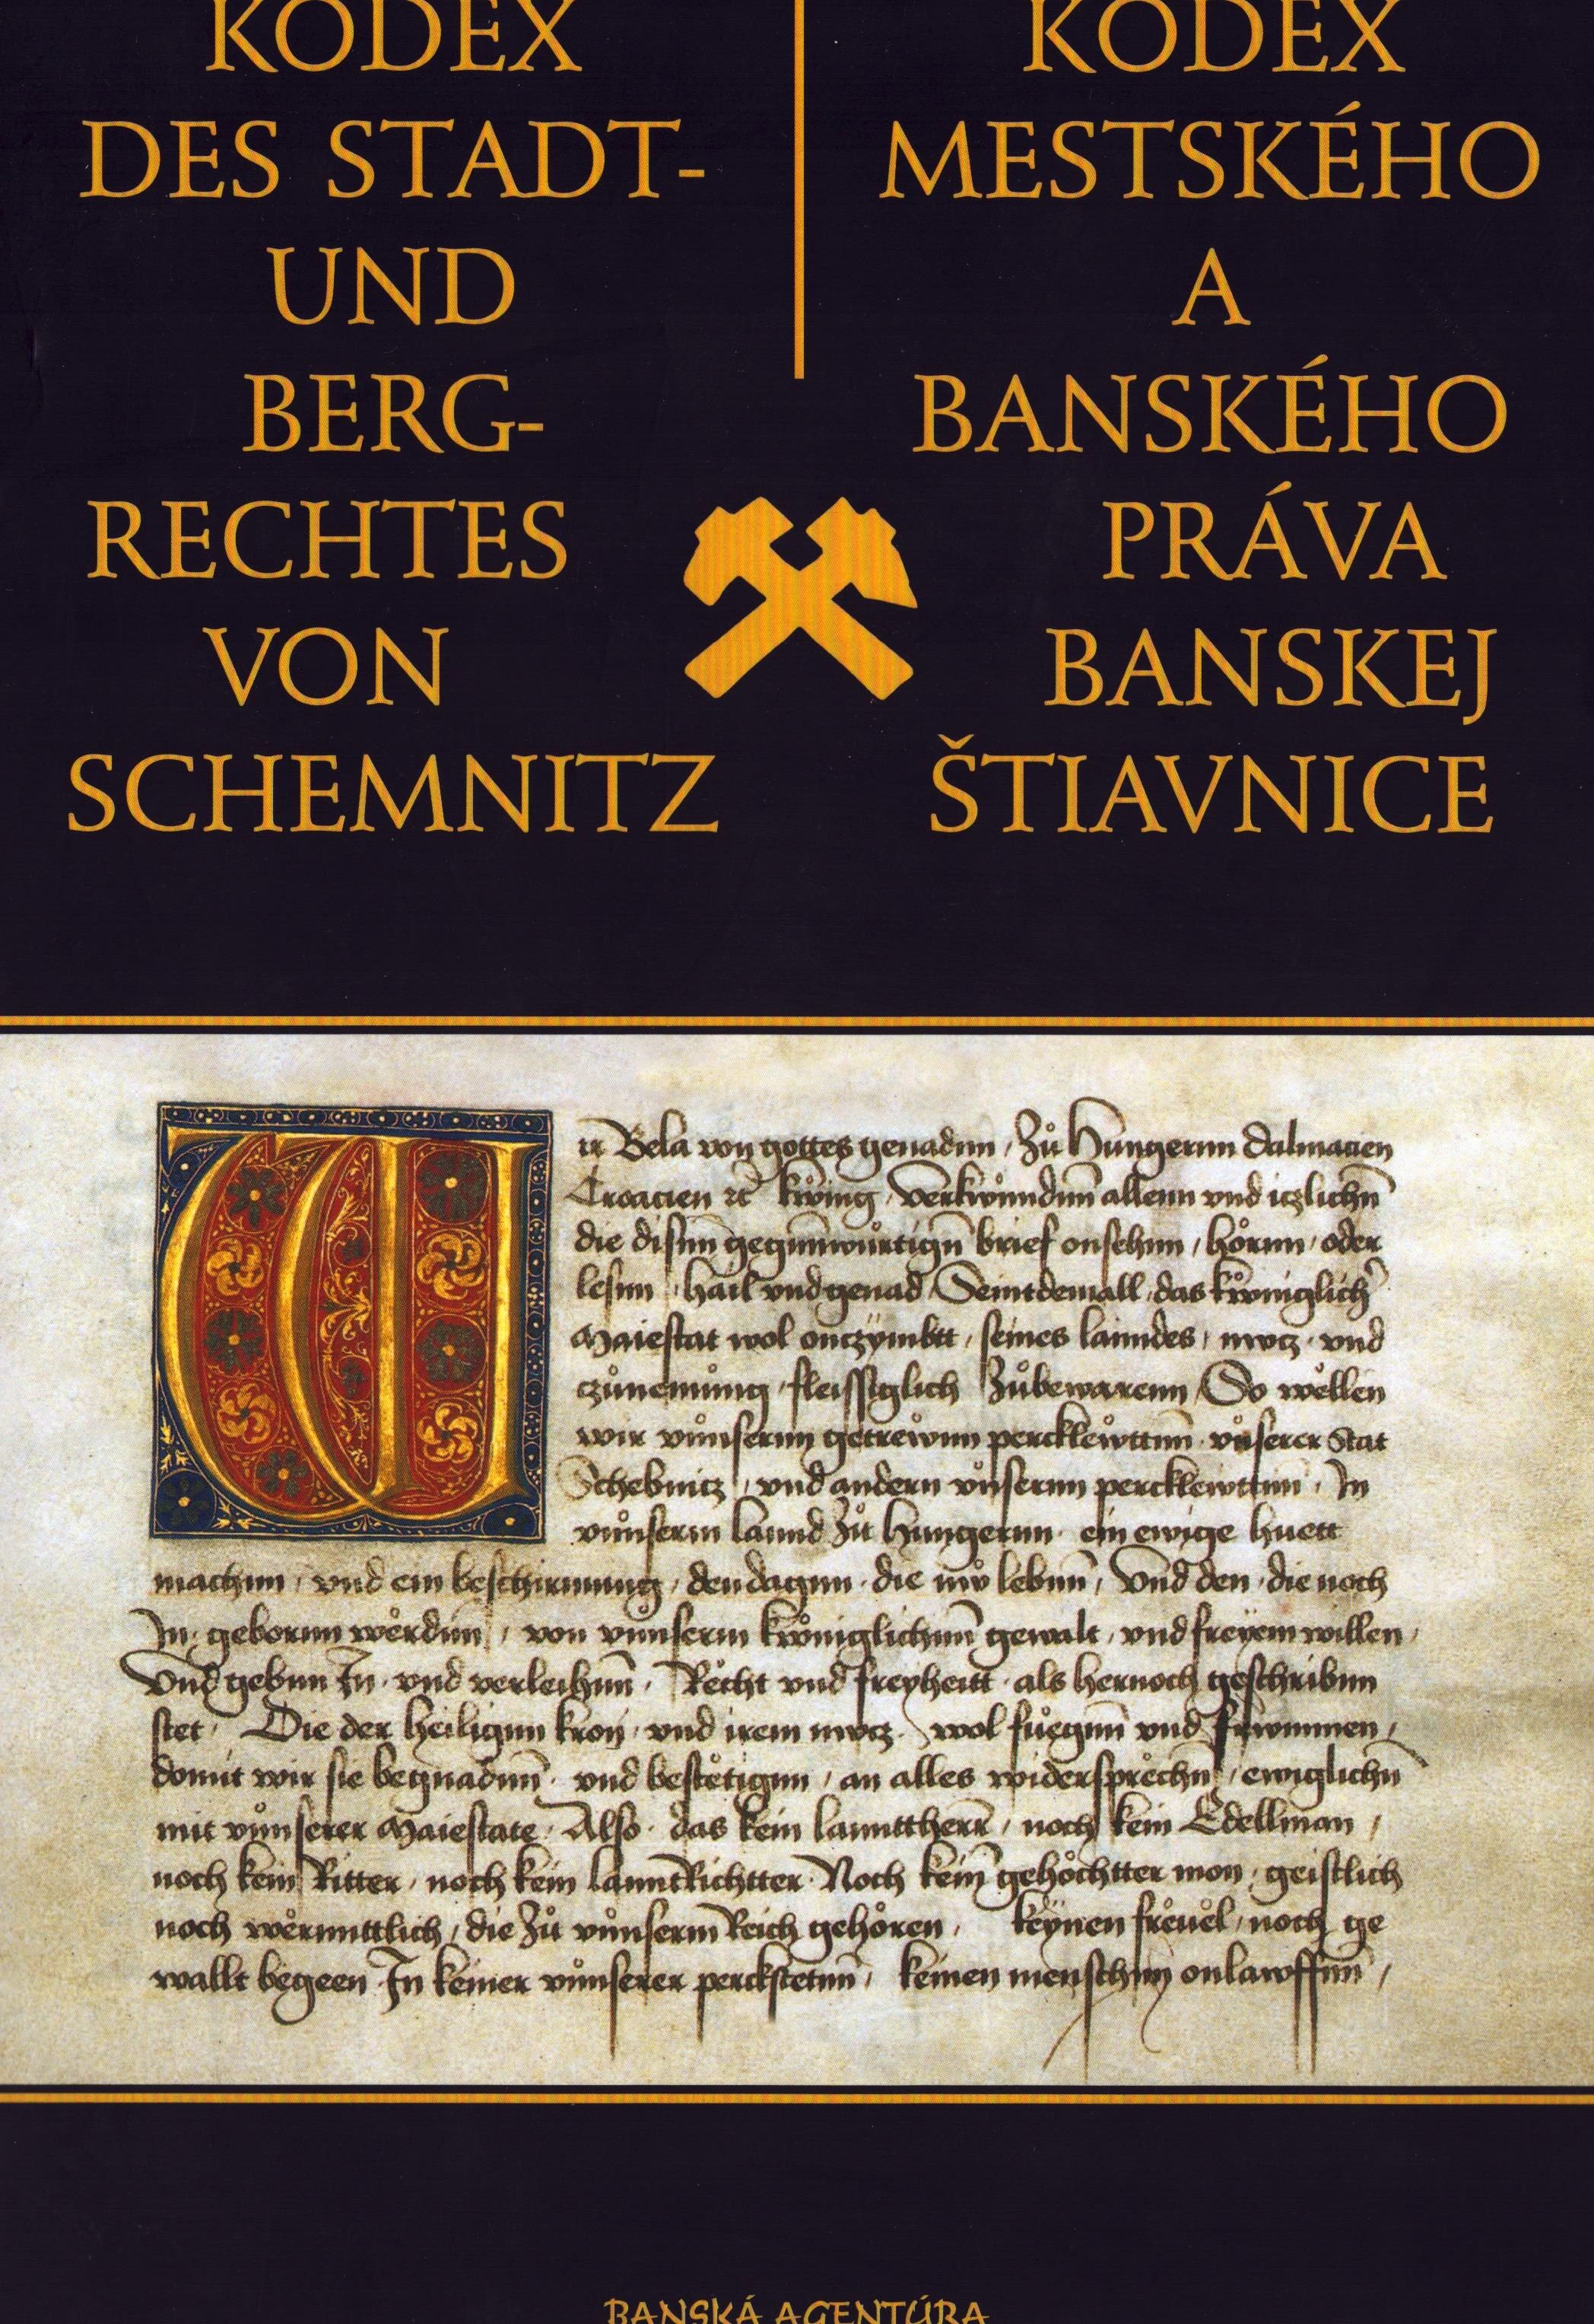 Kodex des Stadt- und Bergrechtes von Schemnitz (Archiv SAXONIA-FREIBERG-STIFTUNG CC BY-NC-SA)